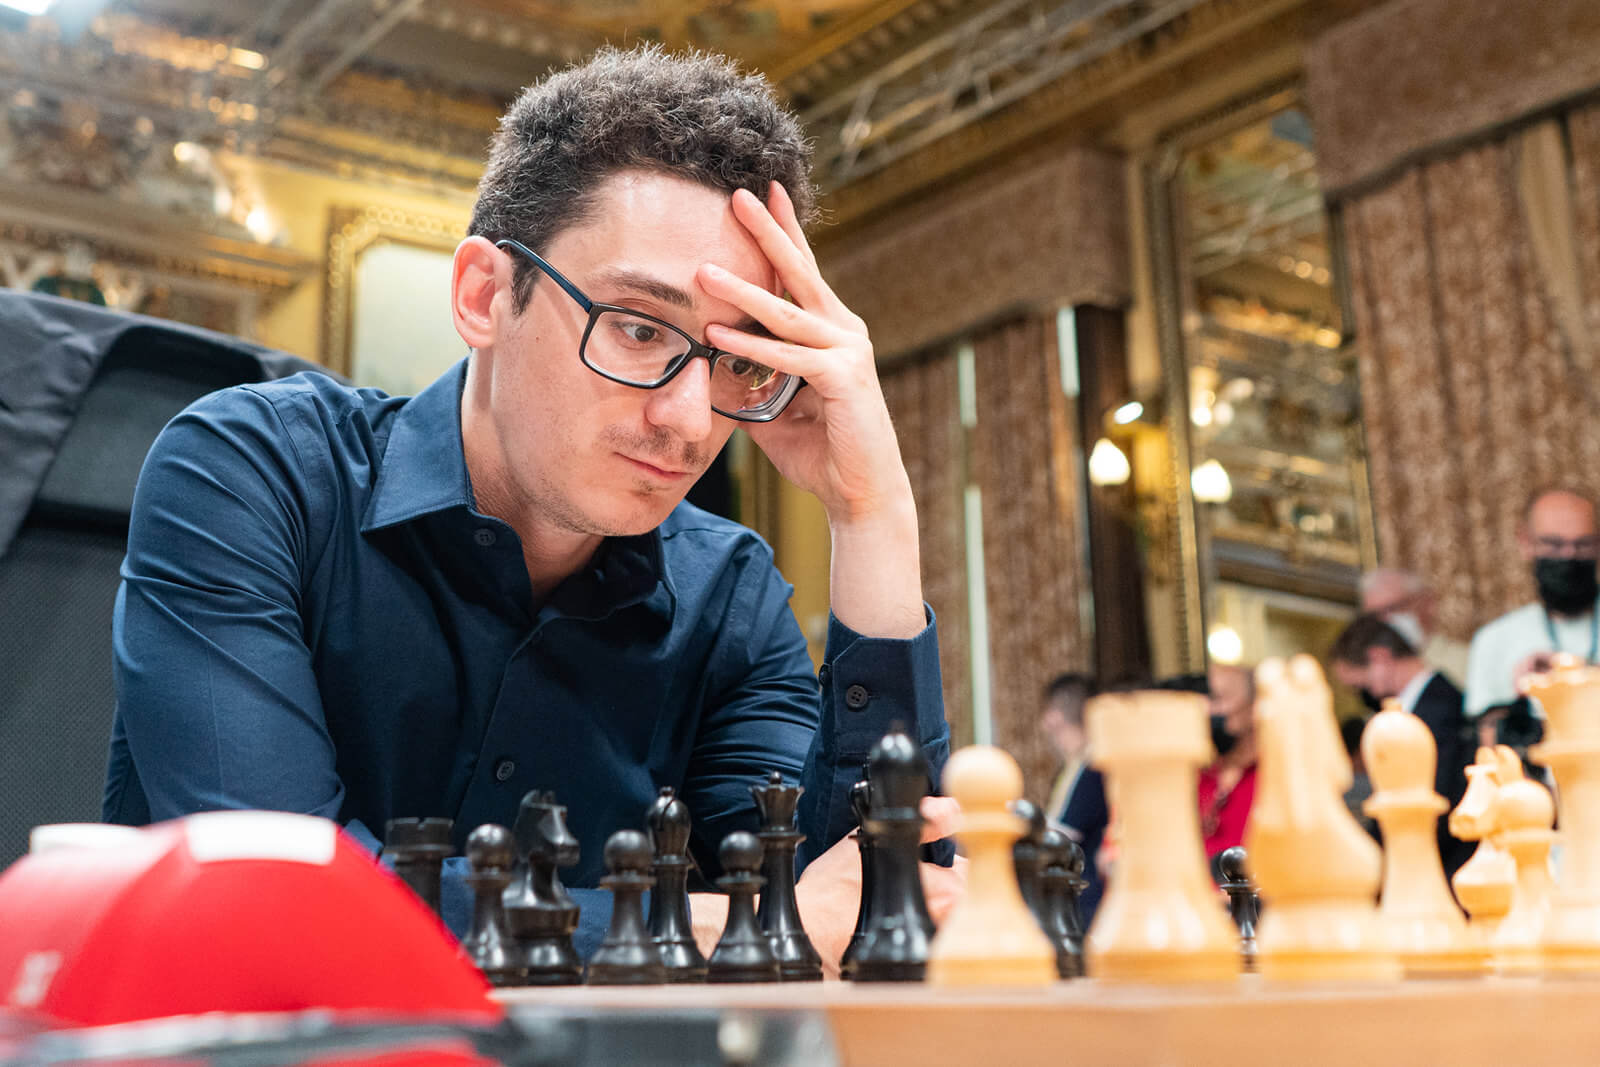 The Guardian: “FIDE needs Carlsen more than Carlsen needs FIDE”